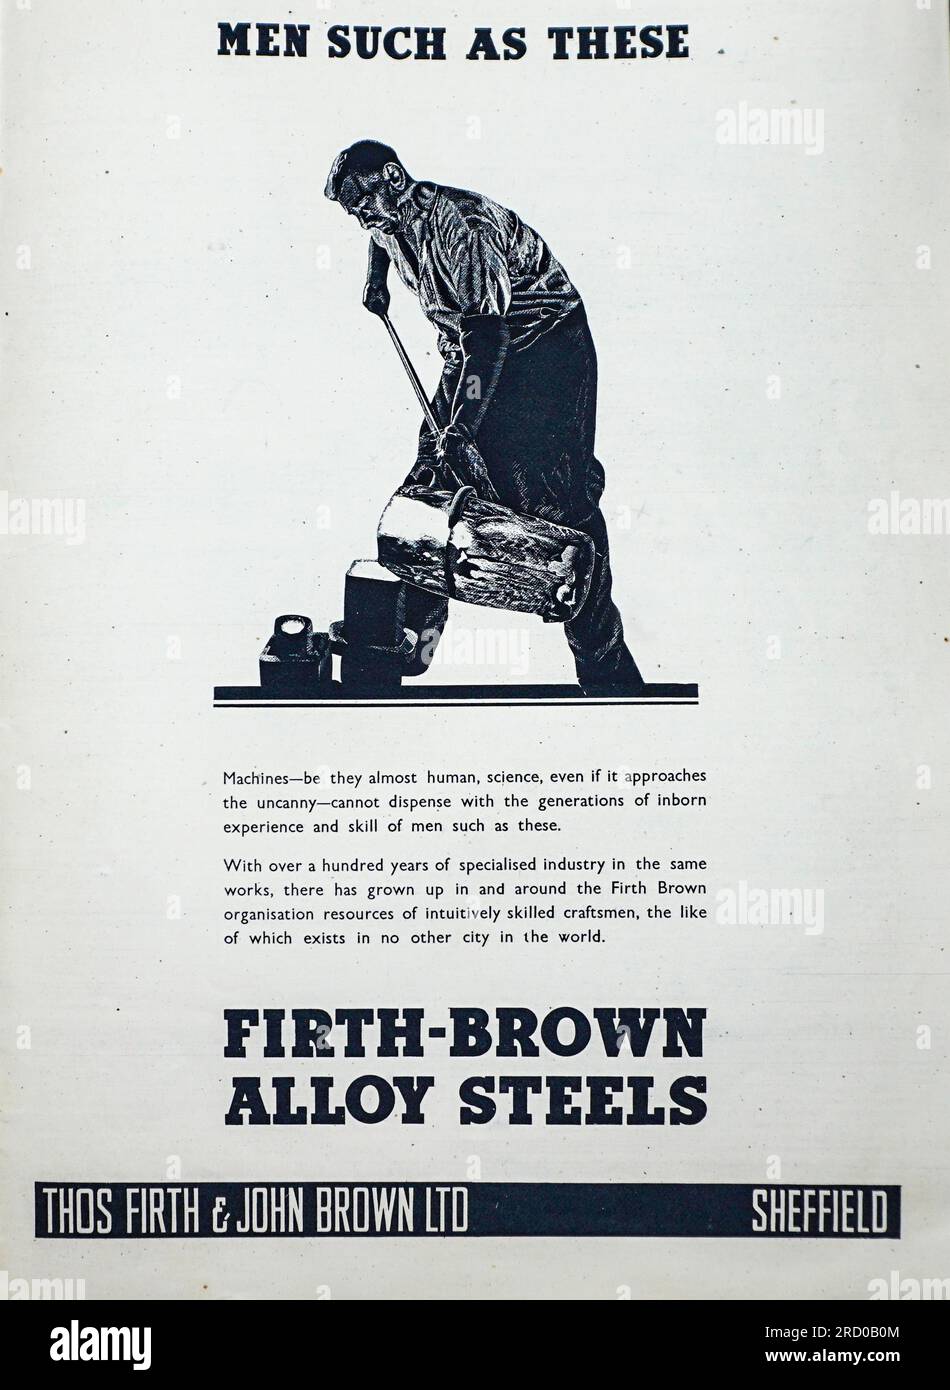 Eine 1941-Kriegsanzeige für Firth Brown Alloy Steels, hergestellt von Thos Firth & John Brown Ltd. Aus Sheffield, England. Firth Brown Steels wurde 1902 nach einer Vereinbarung zwischen den beiden Unternehmen gegründet. In der Werbung heißt es, dass es mit mehr als 100 Jahren Erfahrung in Firth Brown über Fachkräfte für Handwerker verfüge, „wie sie es in keiner anderen Stadt der Welt gibt“das Unternehmen expandierte im Laufe der Jahre durch Fusionen und Übernahmen bestehender Unternehmen. Bis zum Jahr 2000 wurde das ursprüngliche Unternehmen nicht mehr bestehen, obwohl Teile des Unternehmens in anderer Form überleben. Stockfoto